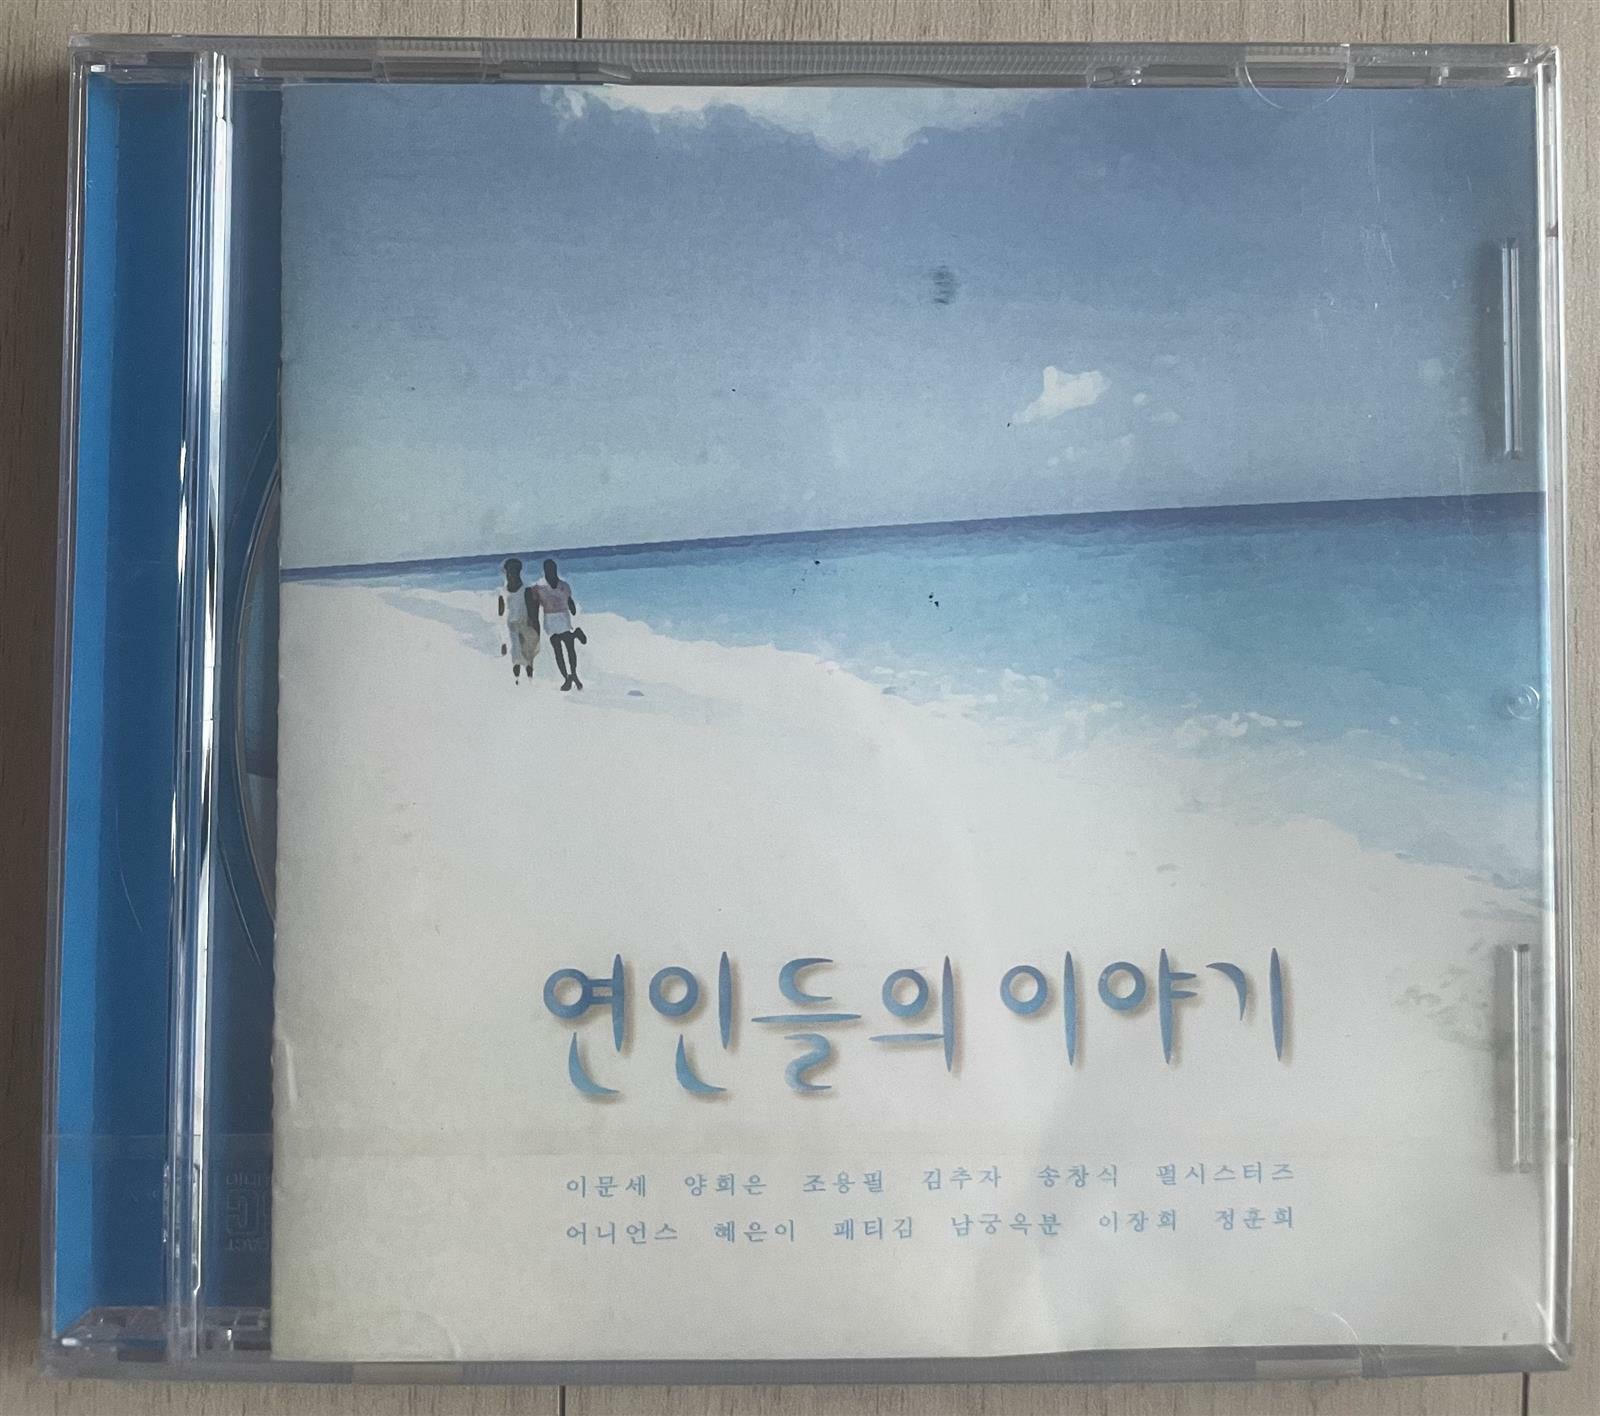 [중고] (미개봉 cd) 연인들의 이야기 - 송창식,최현, 남궁옥분, 펄시스터스, 이장희 등 